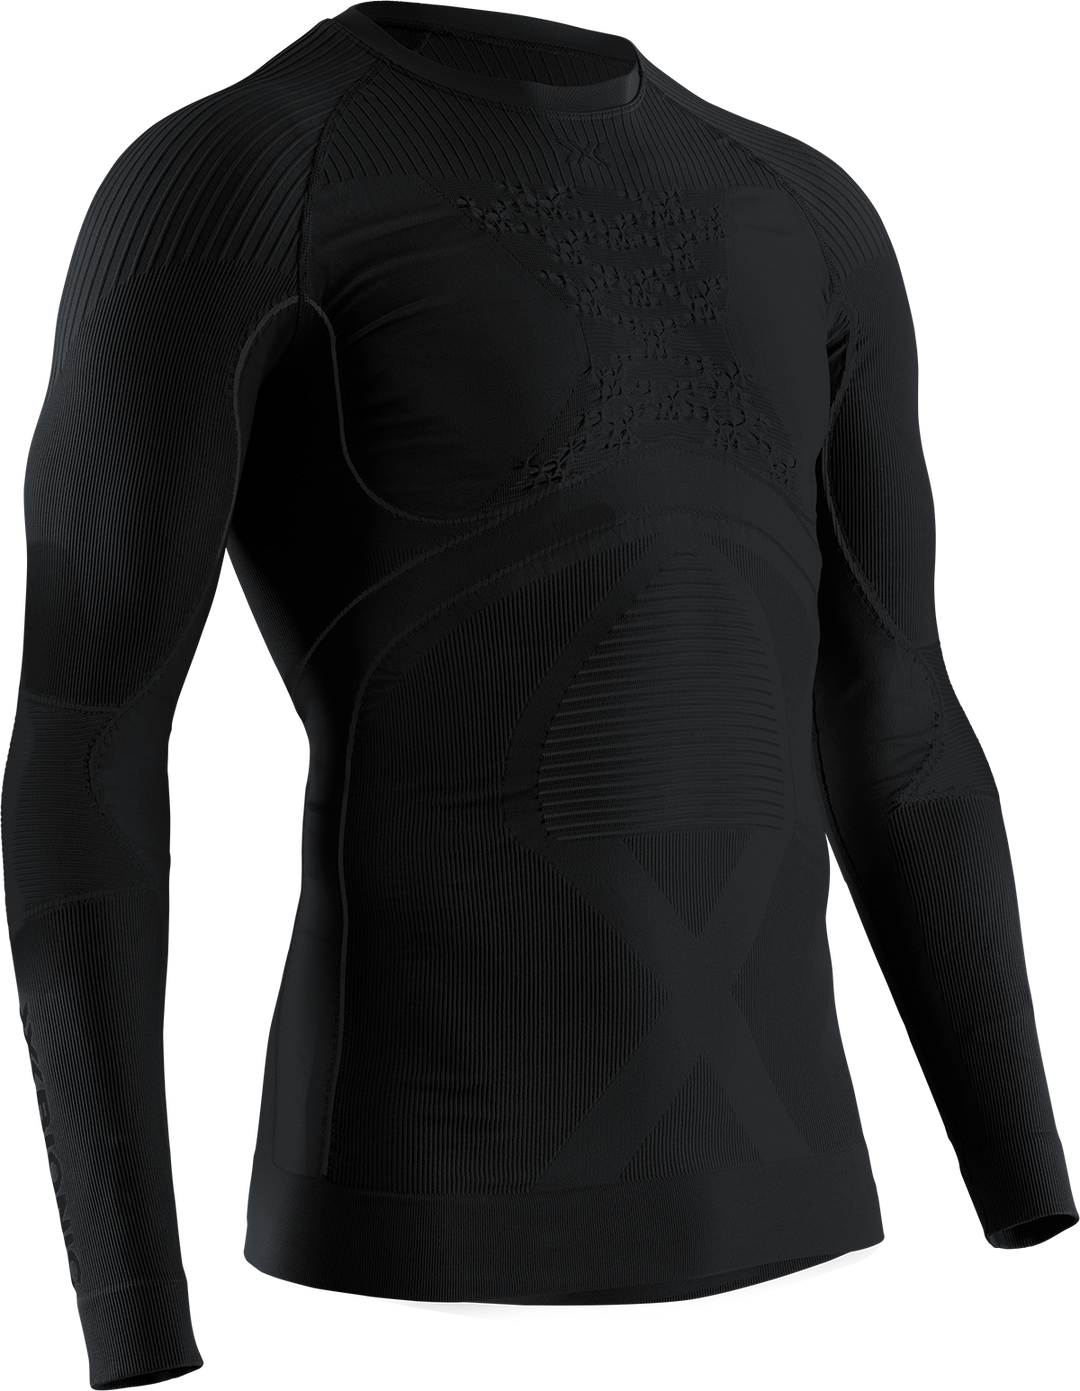 Proskins Men Moto Black Compression Base layer Long Sleeve High Neck top  inner